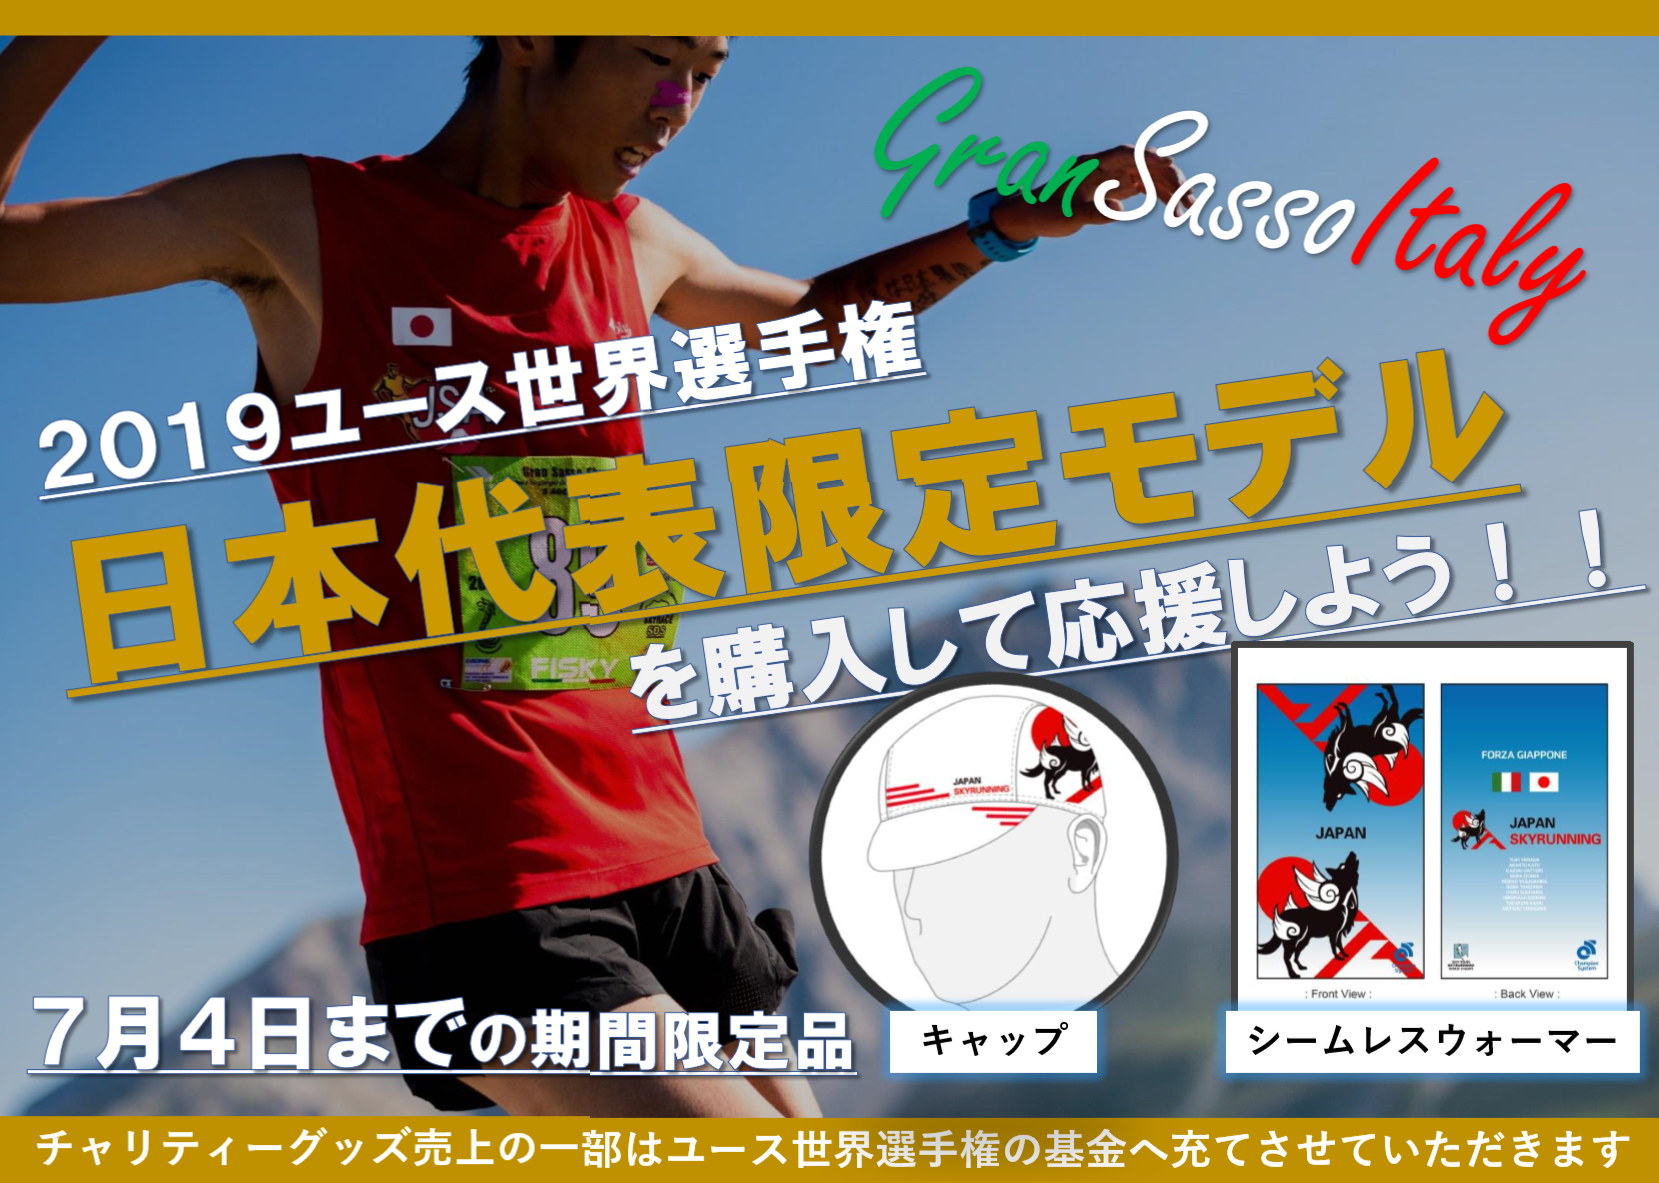 ユース世界選手権 日本代表応援グッズ 限定モデル を発売 Jsa